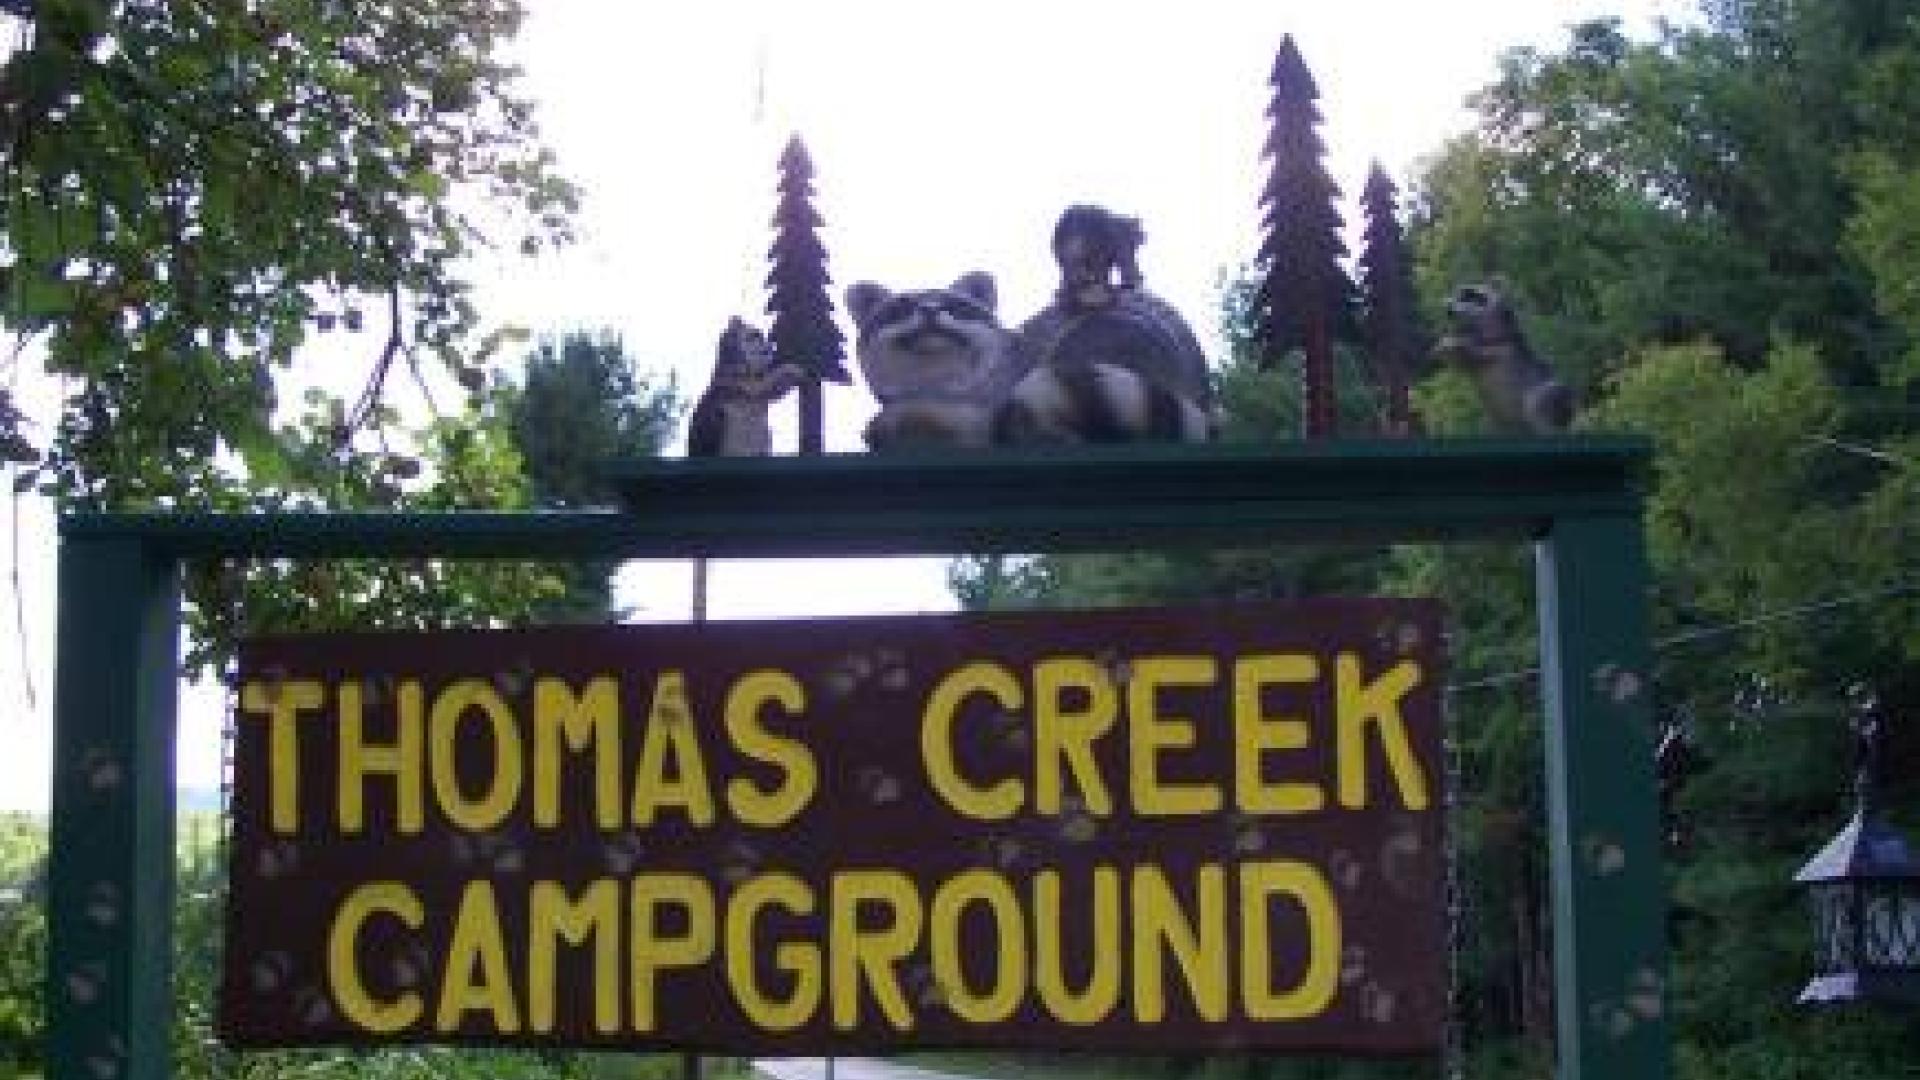 Thomas Creek Campground